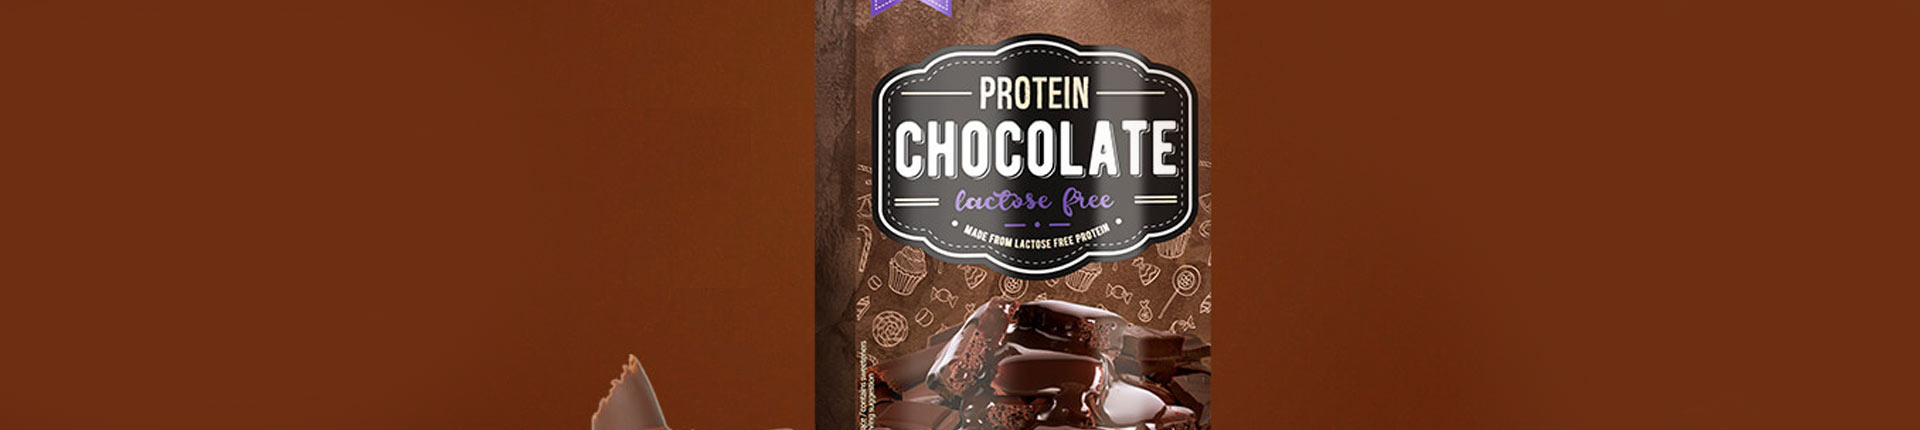 Pyszna białkowa czekolada bez laktozy